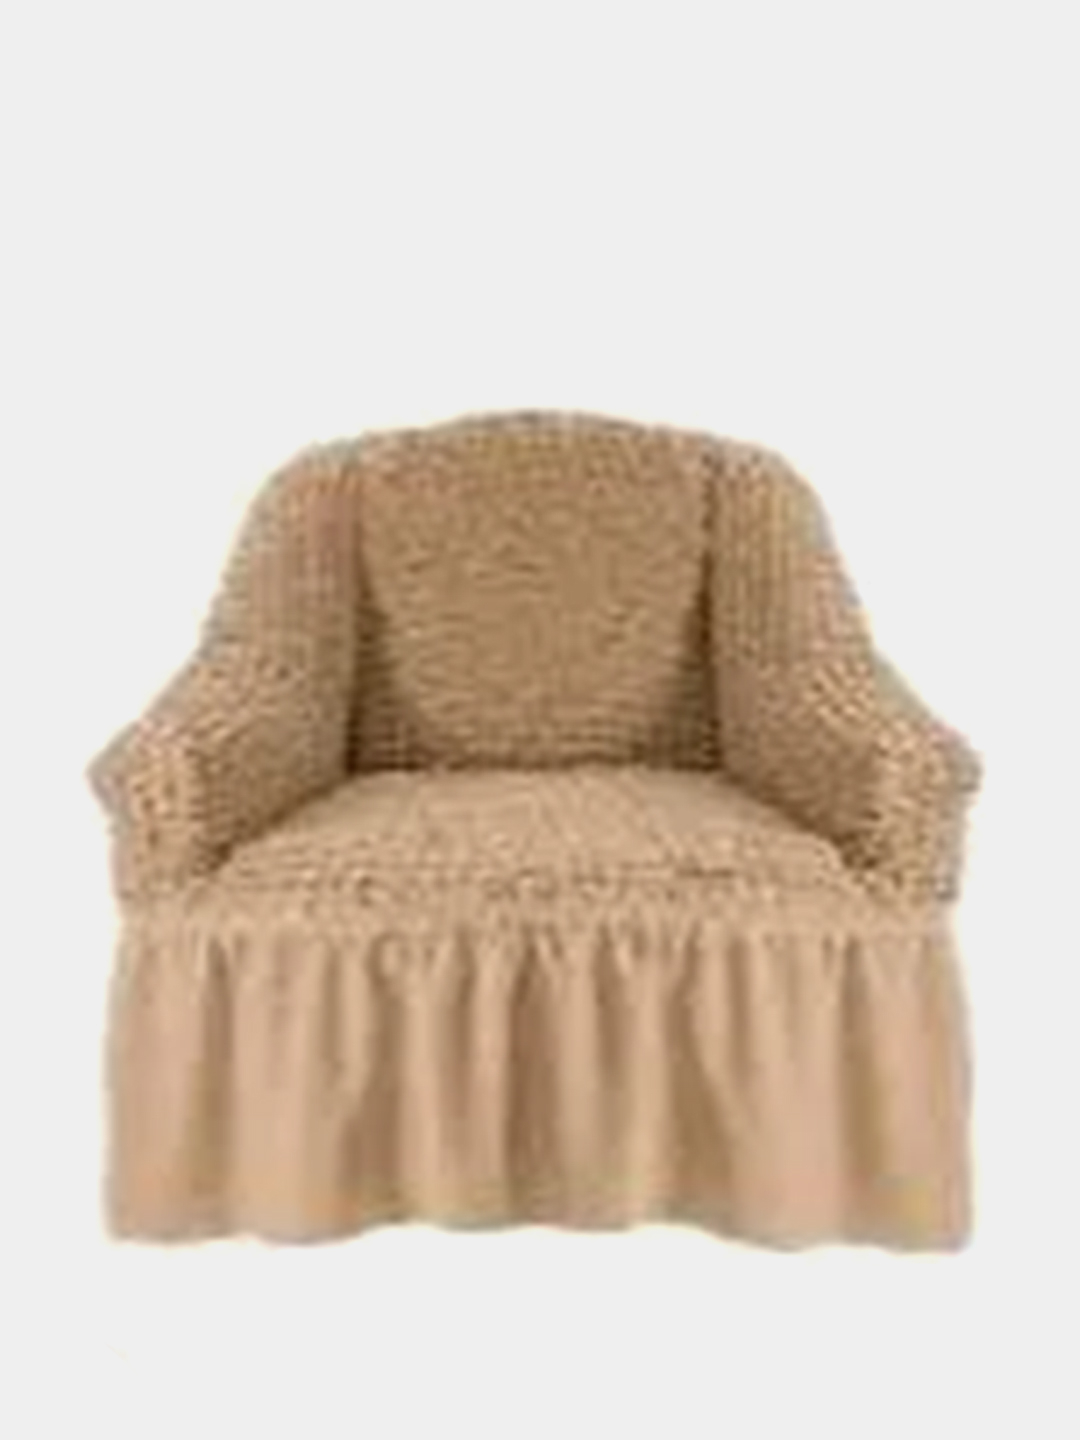 Чехол натяжной на кресло купить по цене 800 ₽ в интернет-магазинеKazanExpress